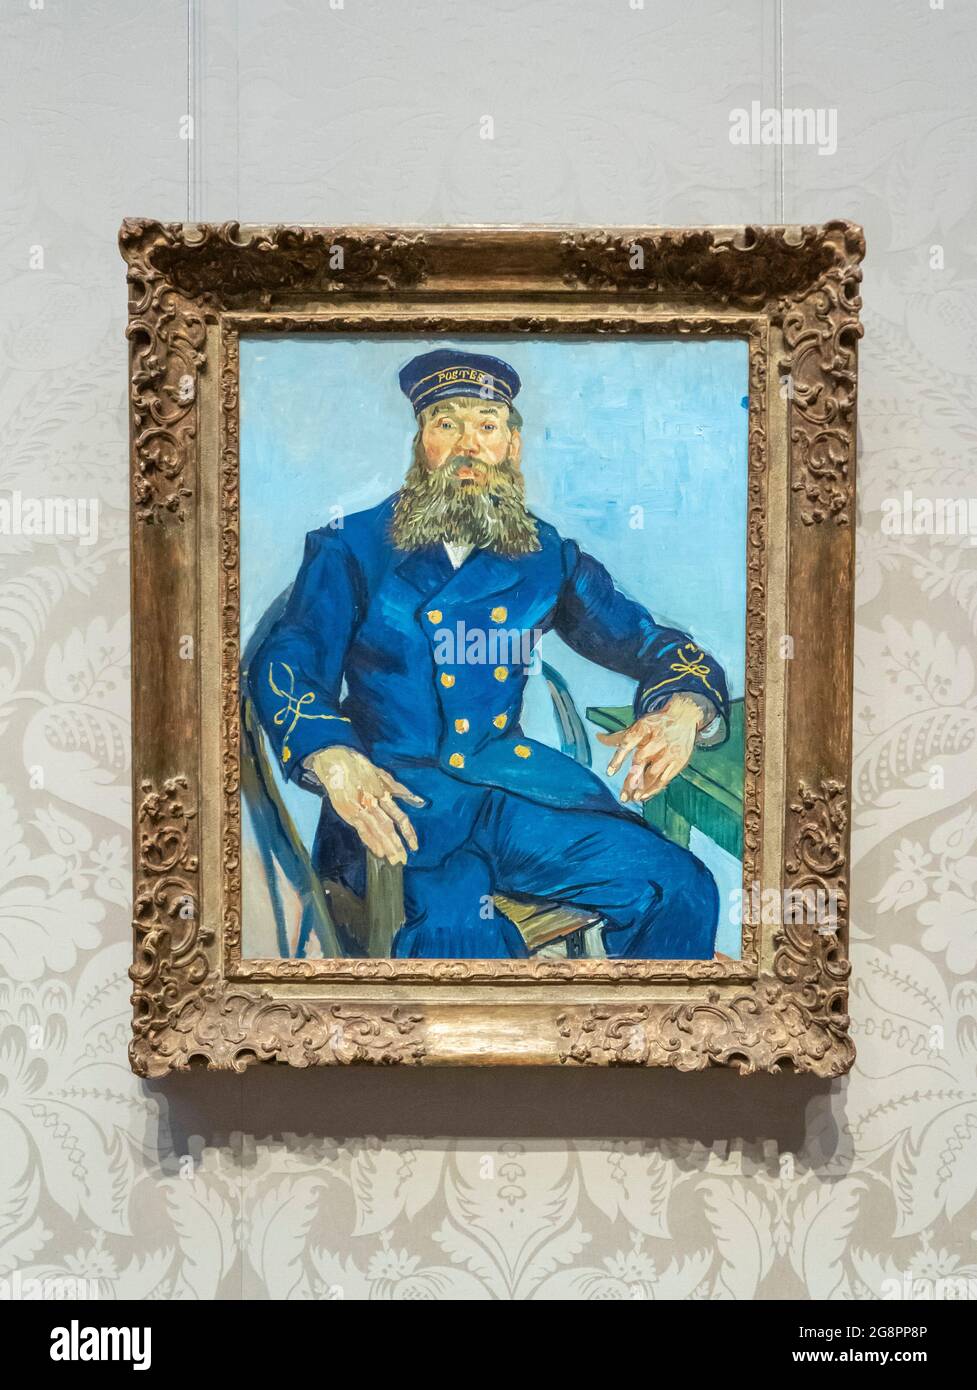 Retrato de Vincent Van Gogh del Postman Joseph Roulin en el Museo de Bellas Artes de Boston Foto de stock